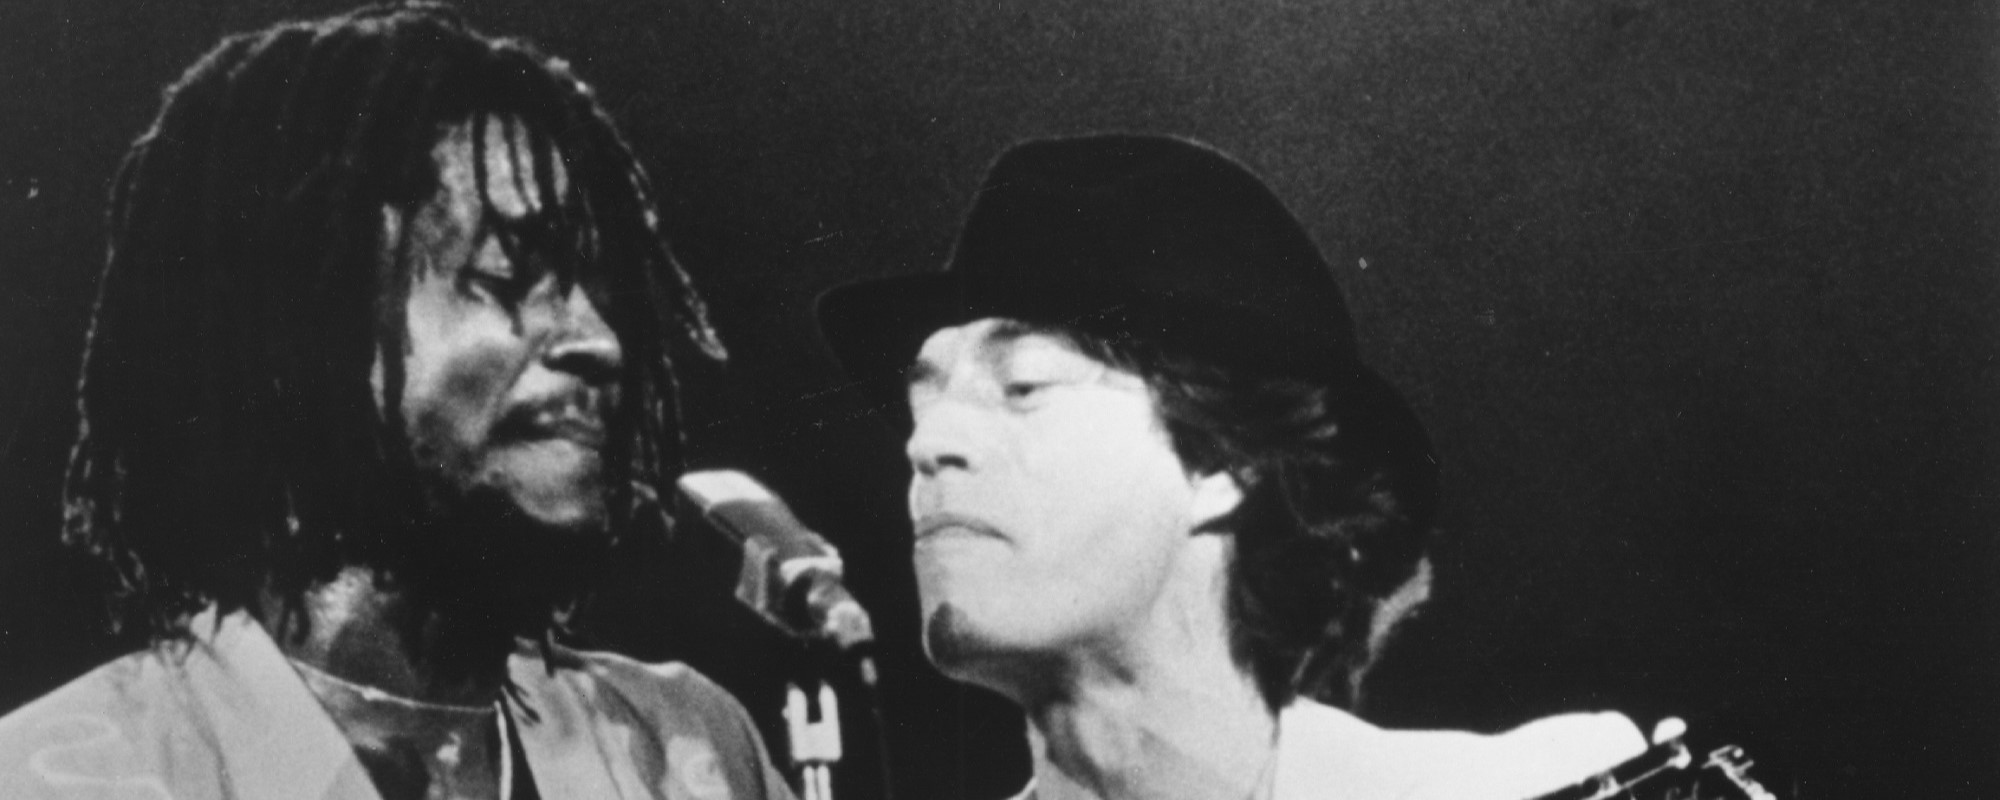 4 características destacadas de Mick Jagger, incluidas canciones de Carly Simon, Don Henley y Peter Tosh